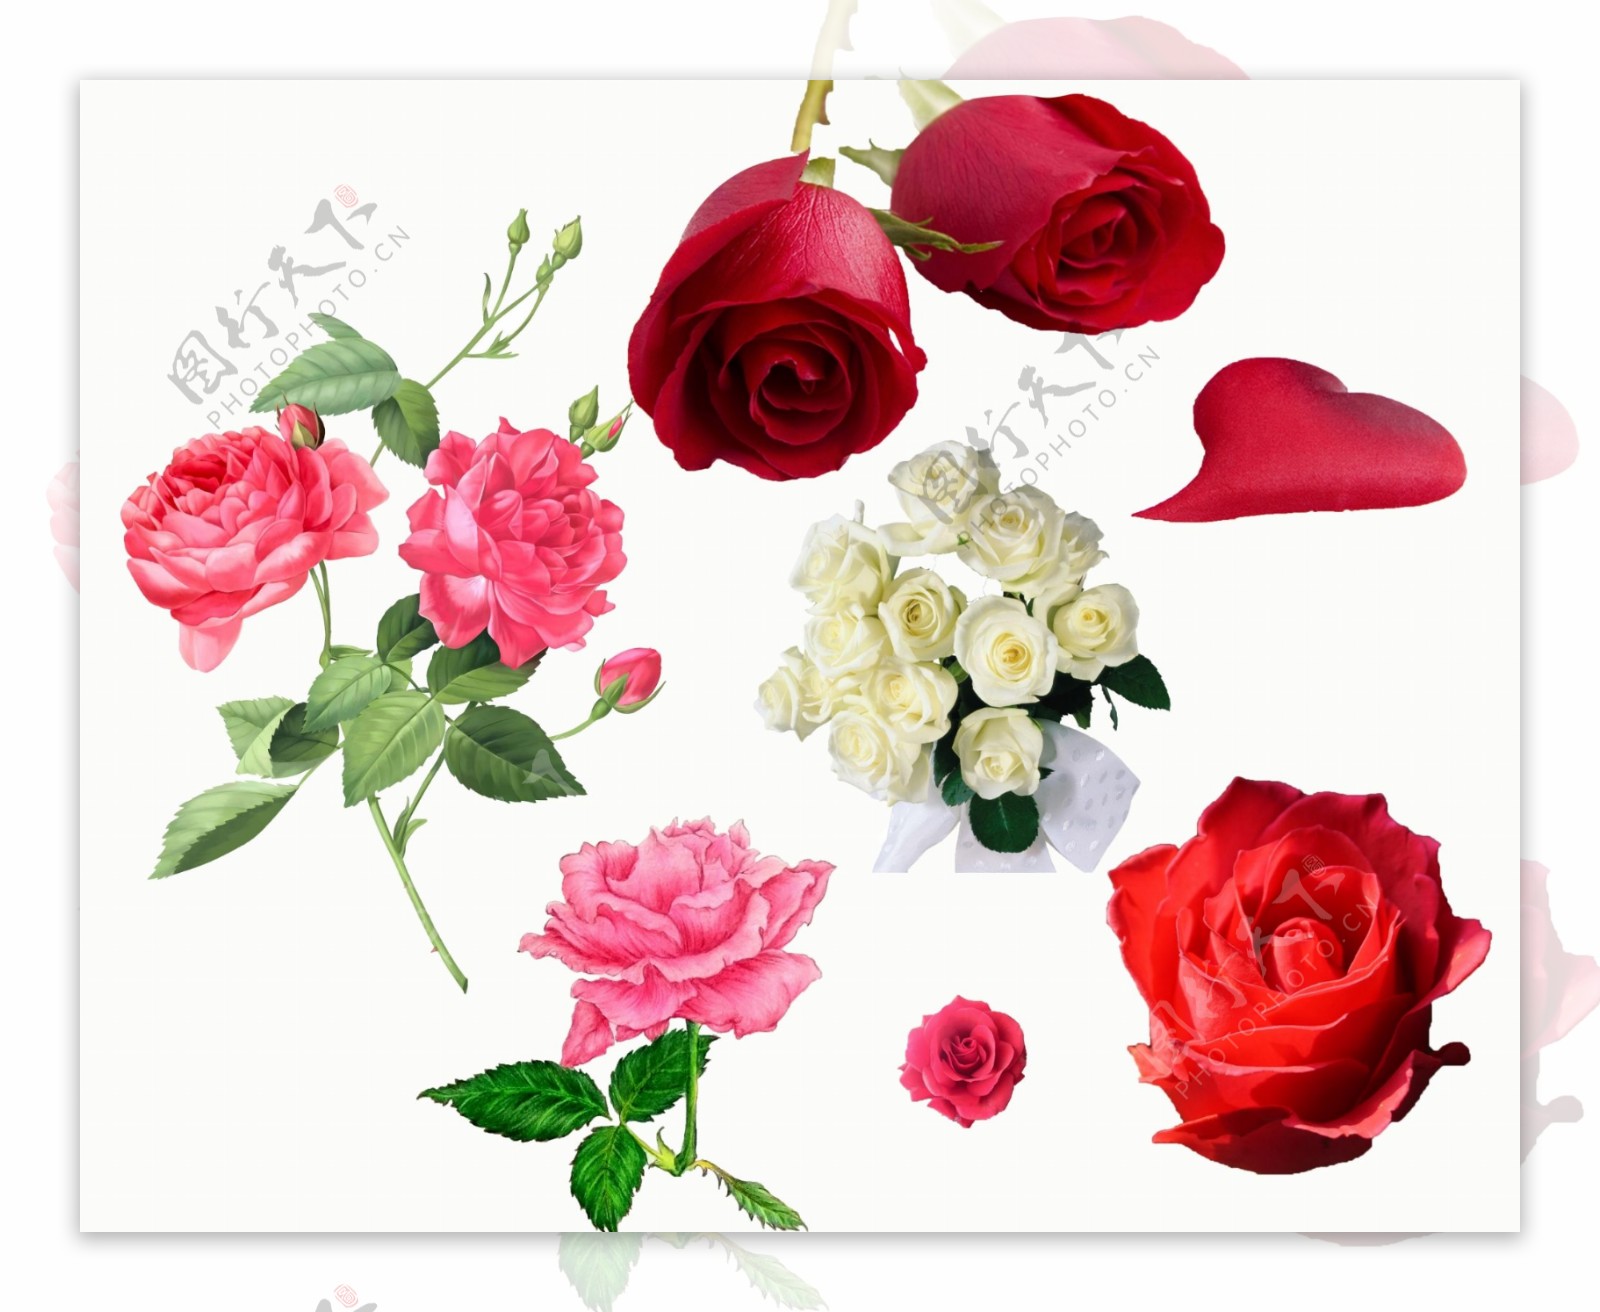 520玫瑰花抠图水彩玫瑰花素材